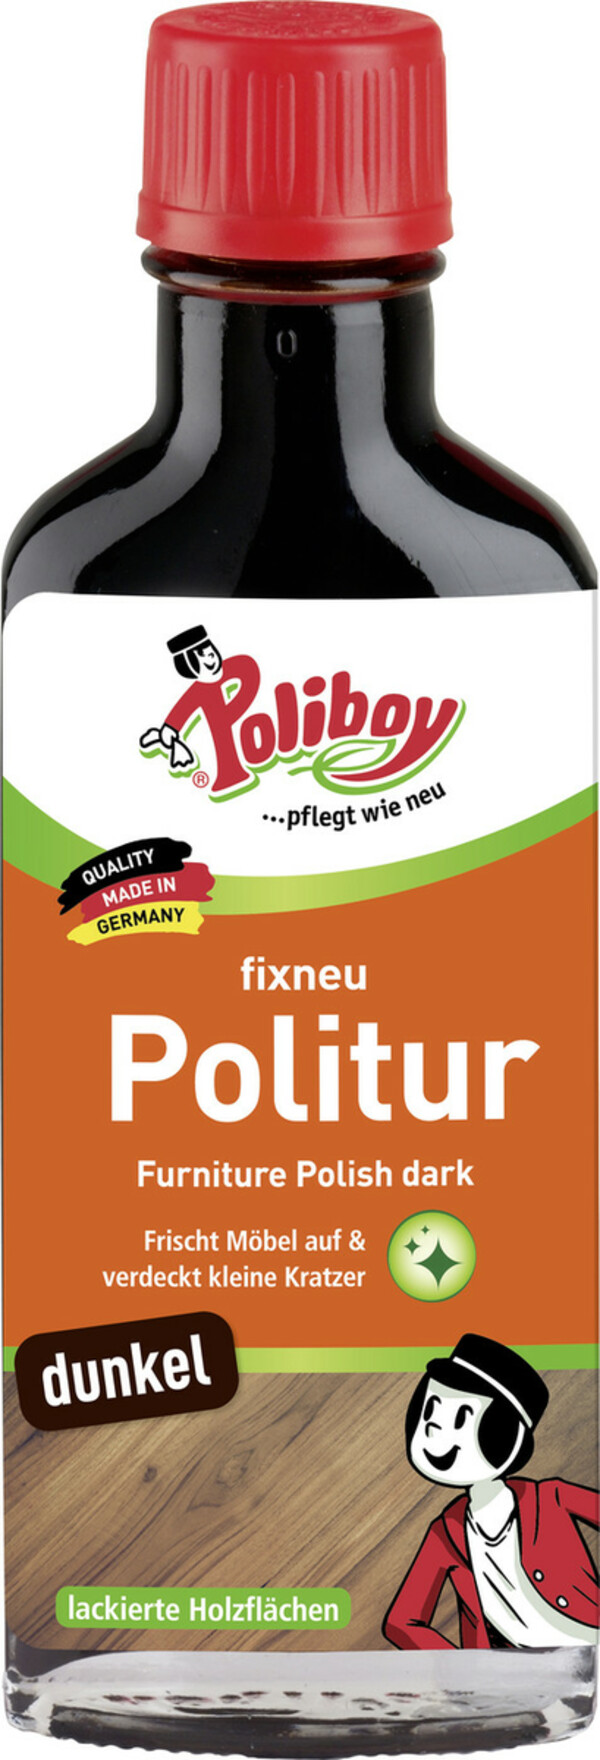 Bild 1 von Poliboy Fixneu Politur dunkel 100ML